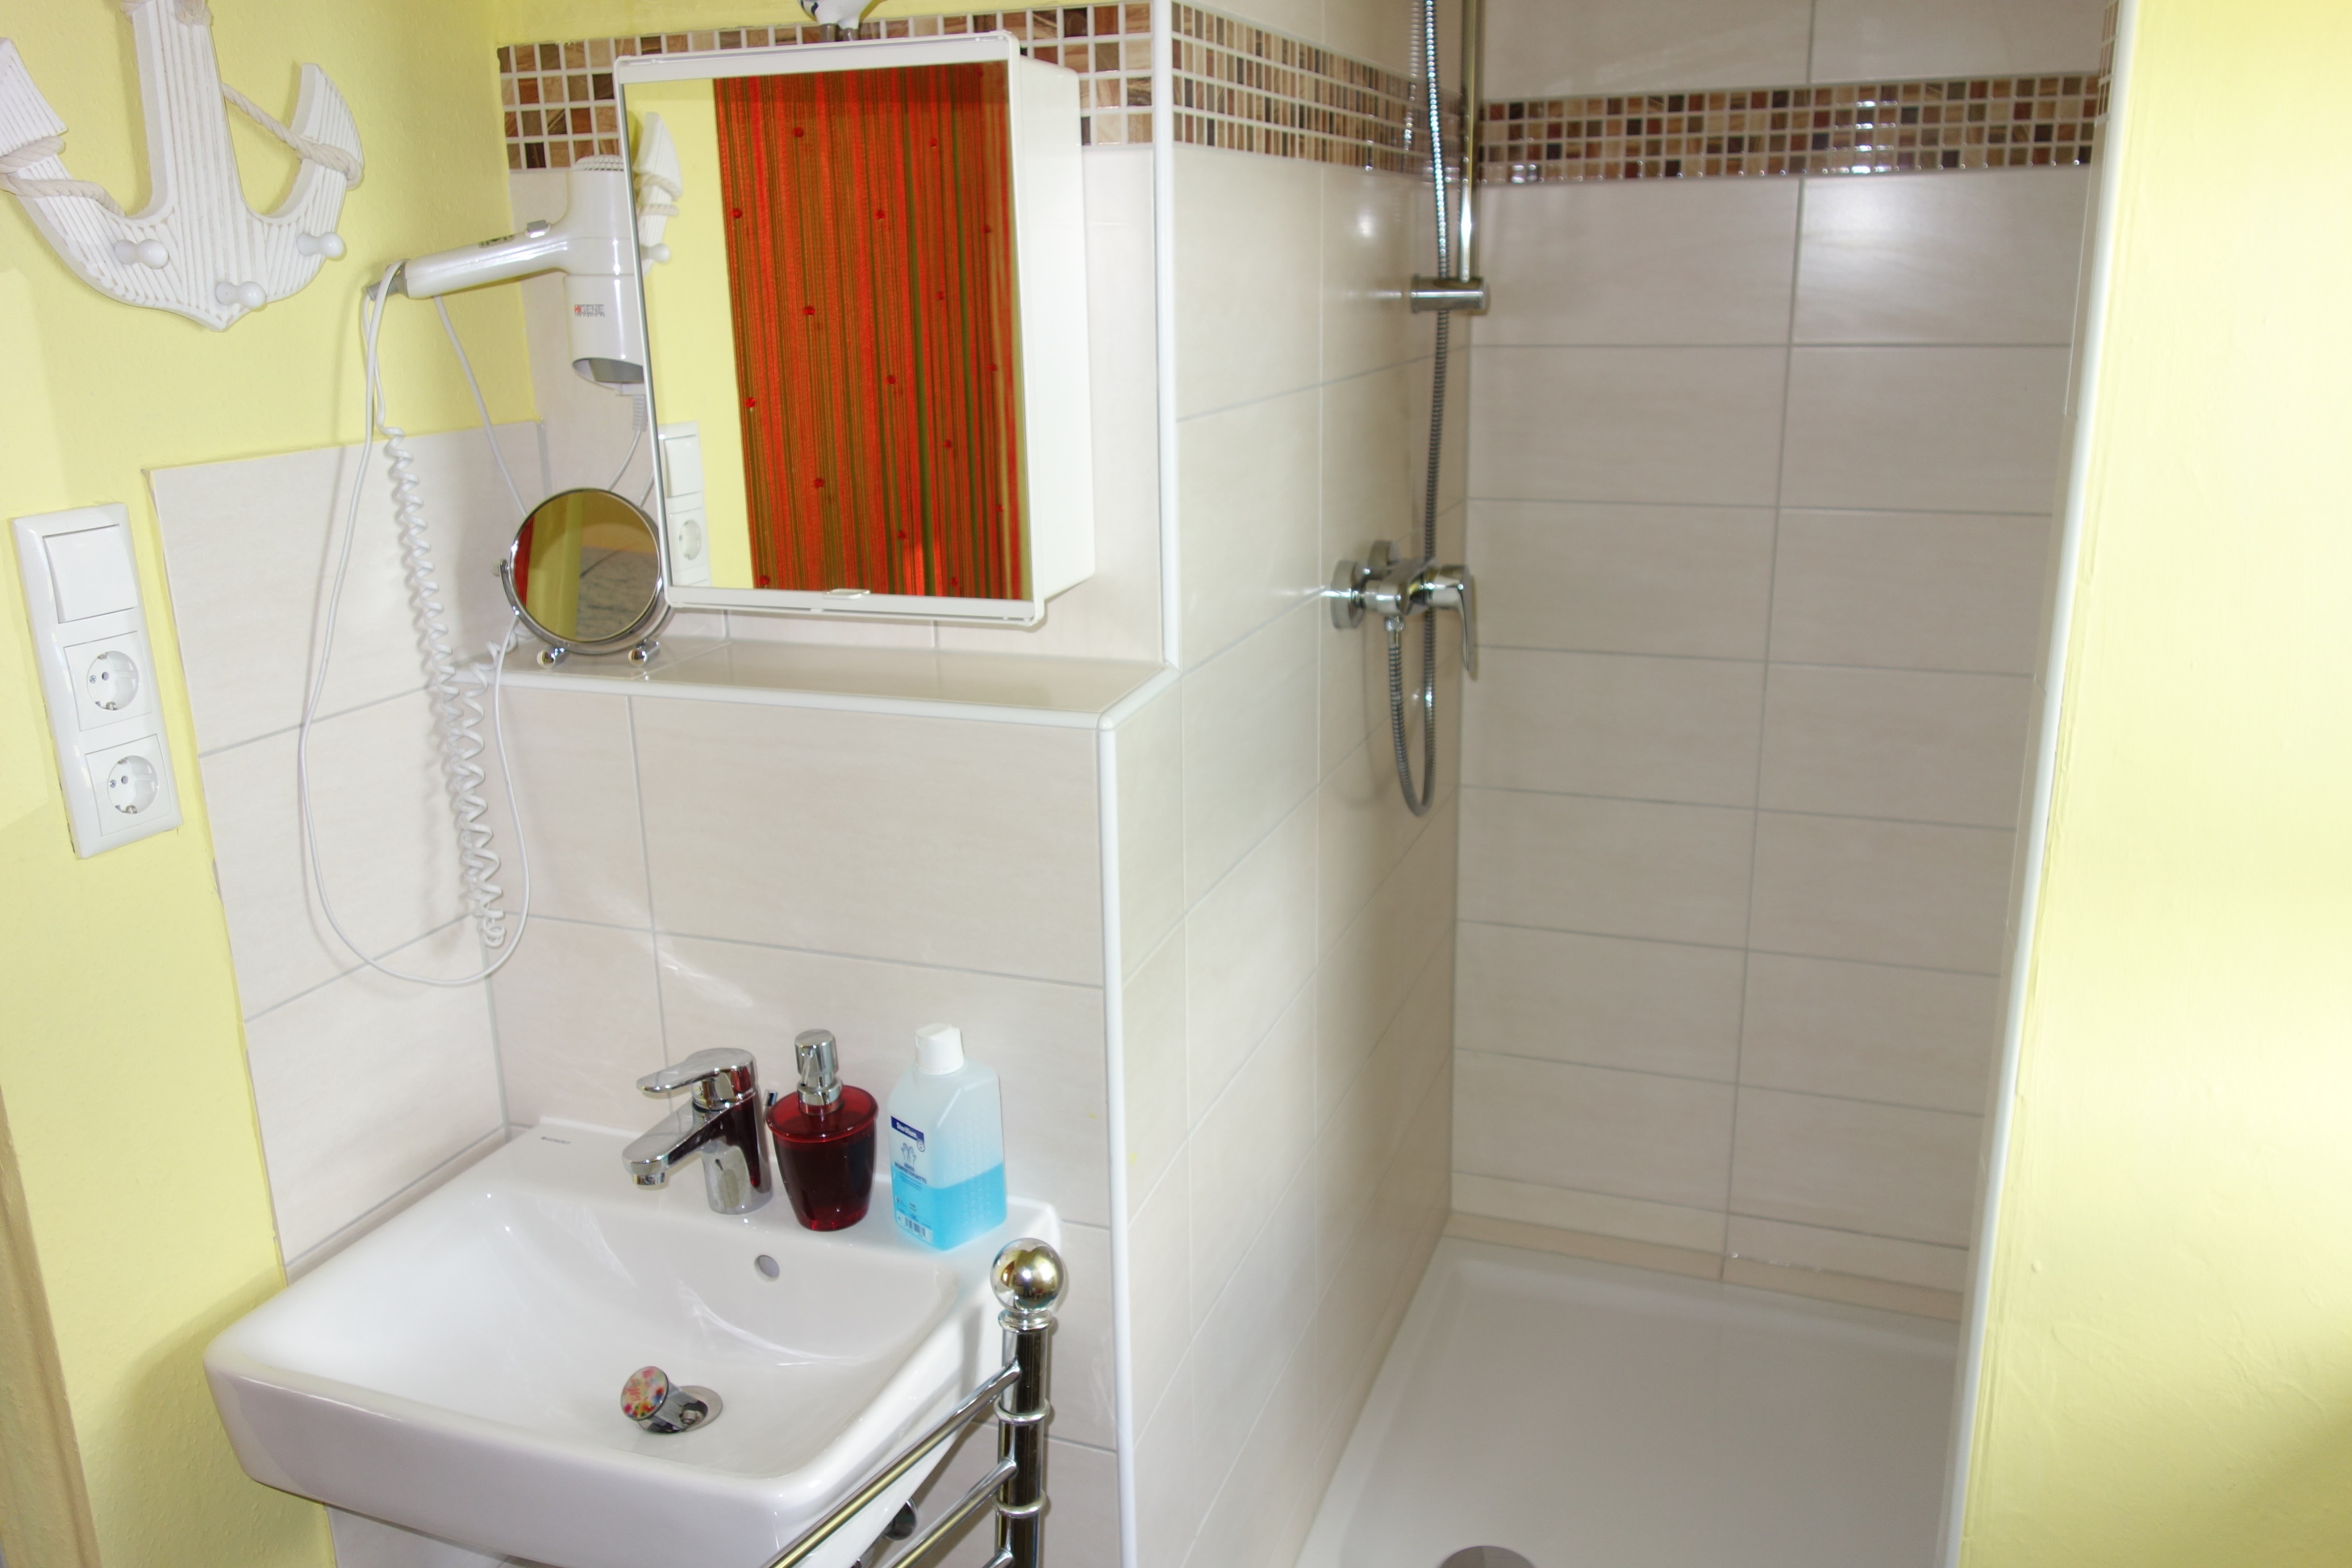 Sanit�rbereich mit Dusche in der G�stewohnung (Foto)